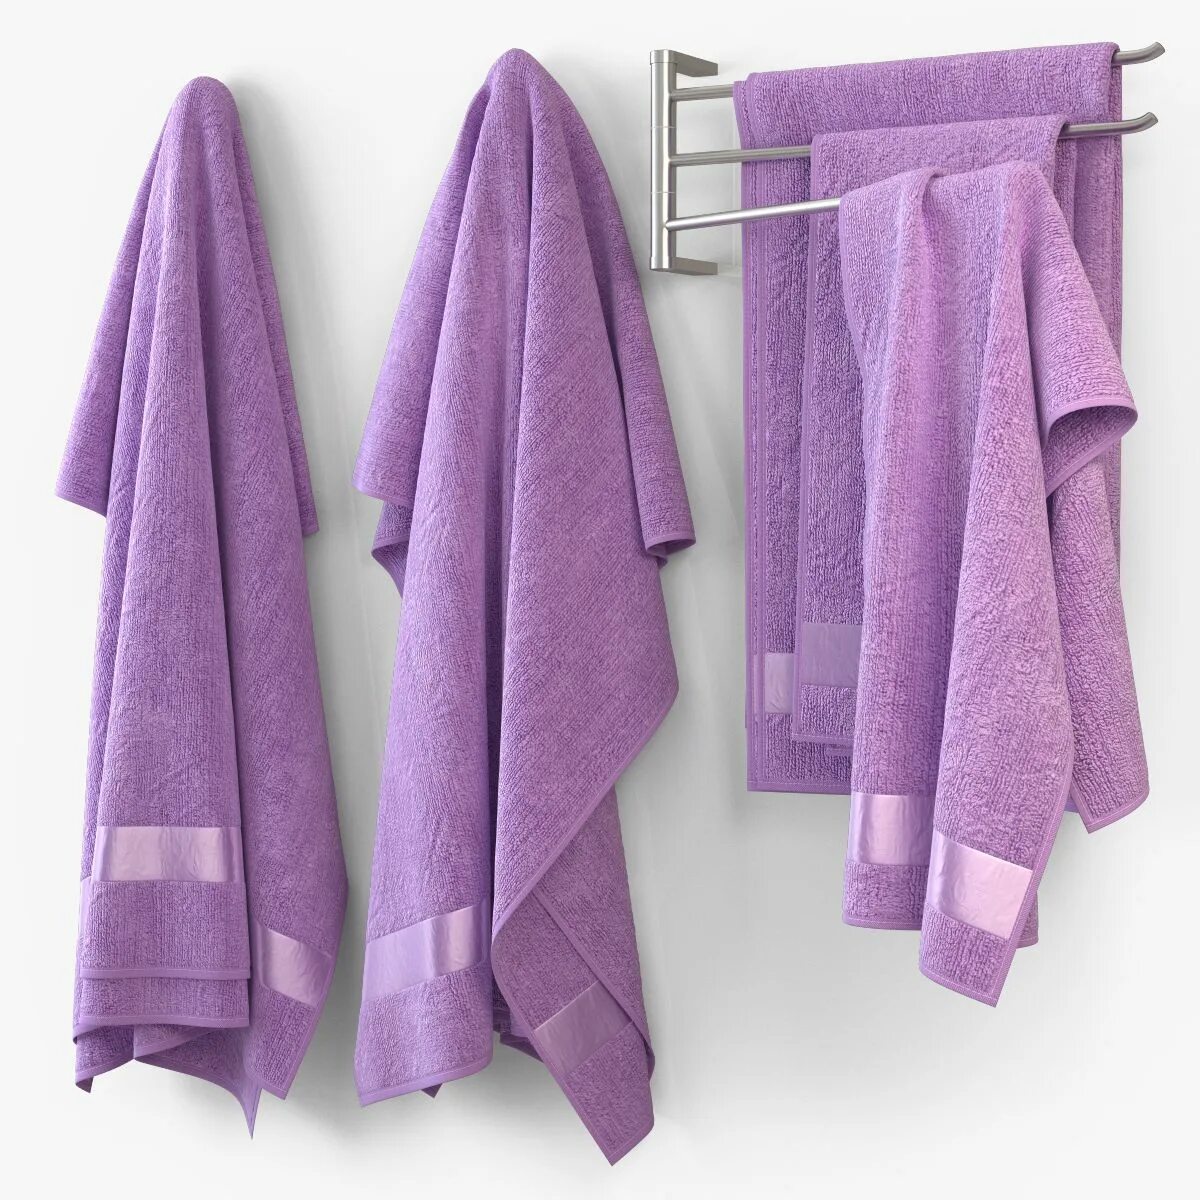 Модели полотенец. 3ds Max модель полотенце для ванной. Полотенце фиолетового цвета. Полотенце лавандового цвета. Красивые полотенца для девочек и мальчиков для ванны.